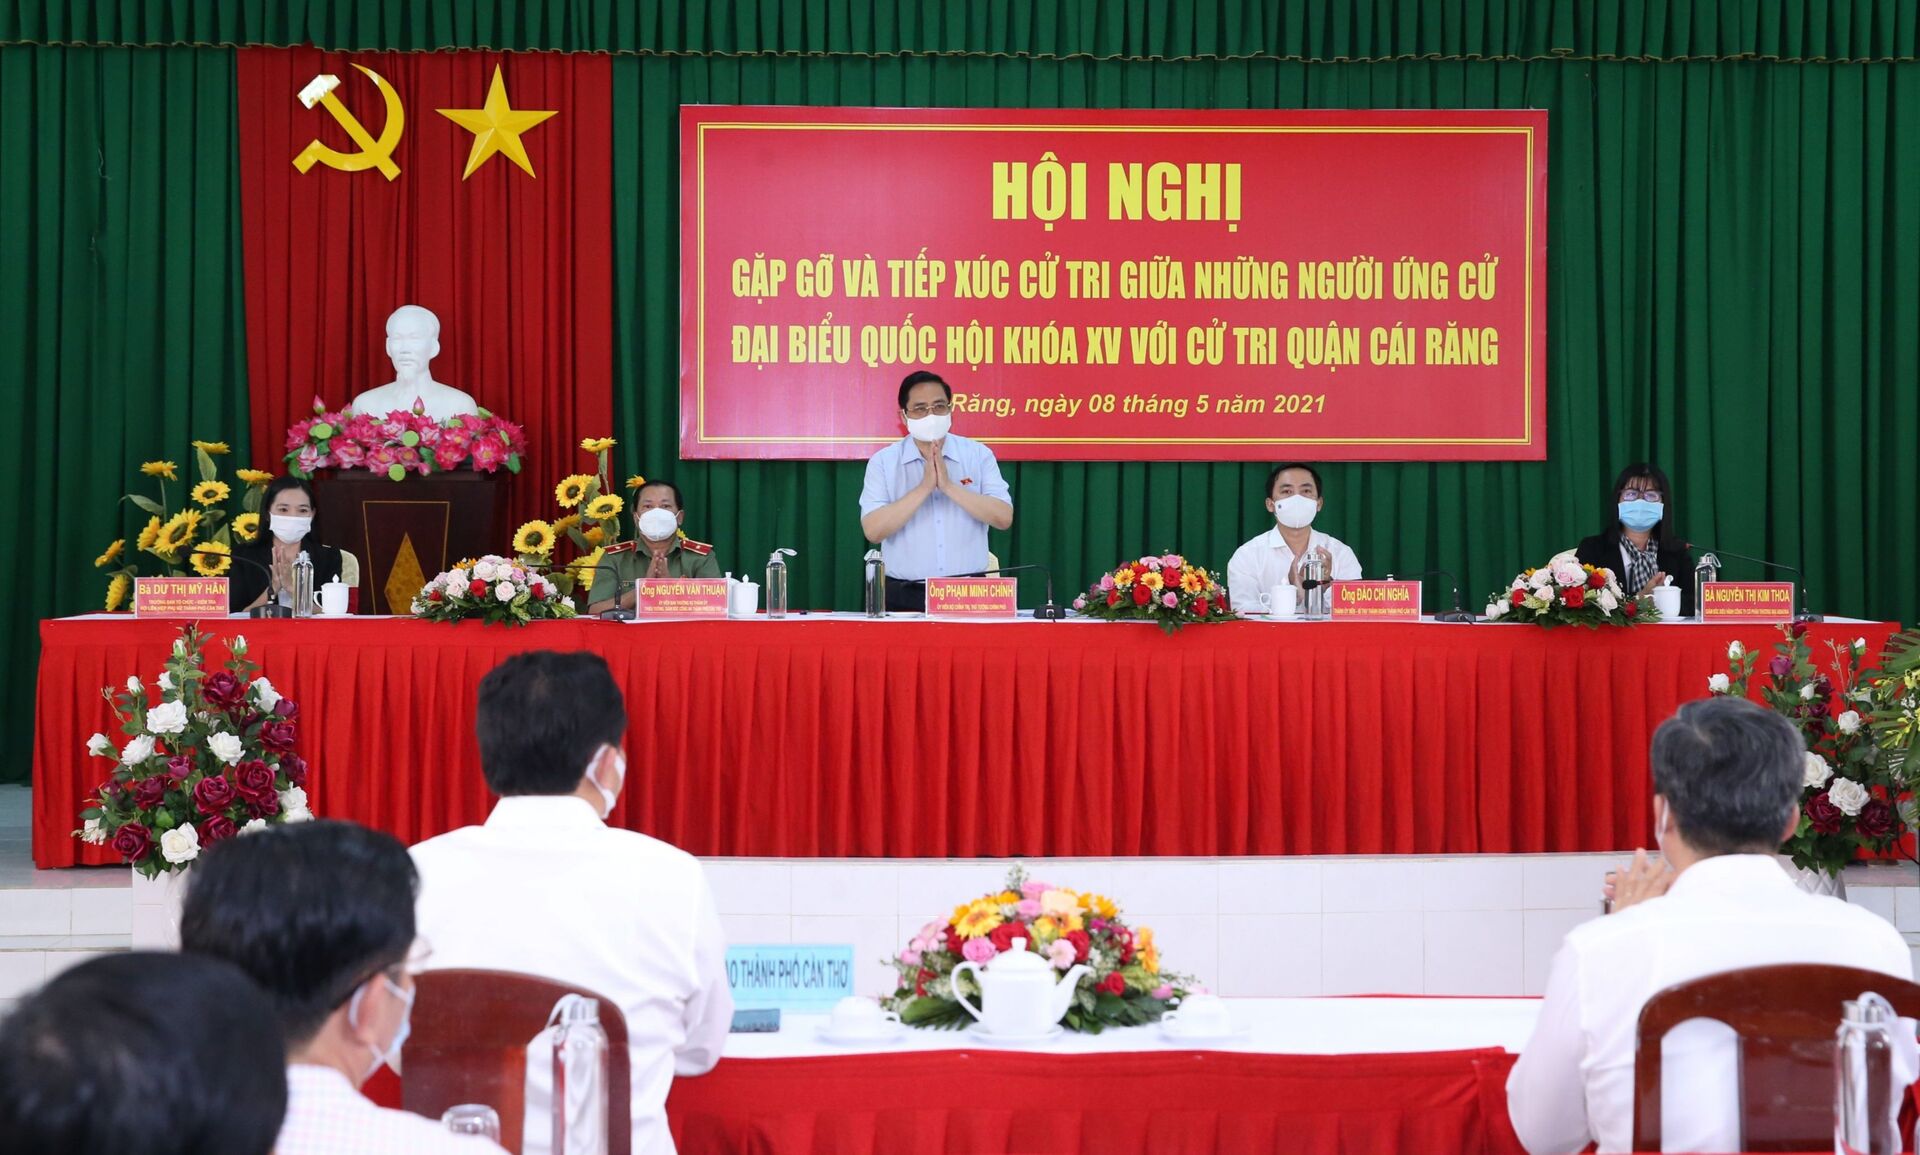 Thủ tướng Chính phủ: “ĐBSCL có tiềm năng lớn nhưng cơ chế, chính sách còn hạn hẹp” - Sputnik Việt Nam, 1920, 08.05.2021